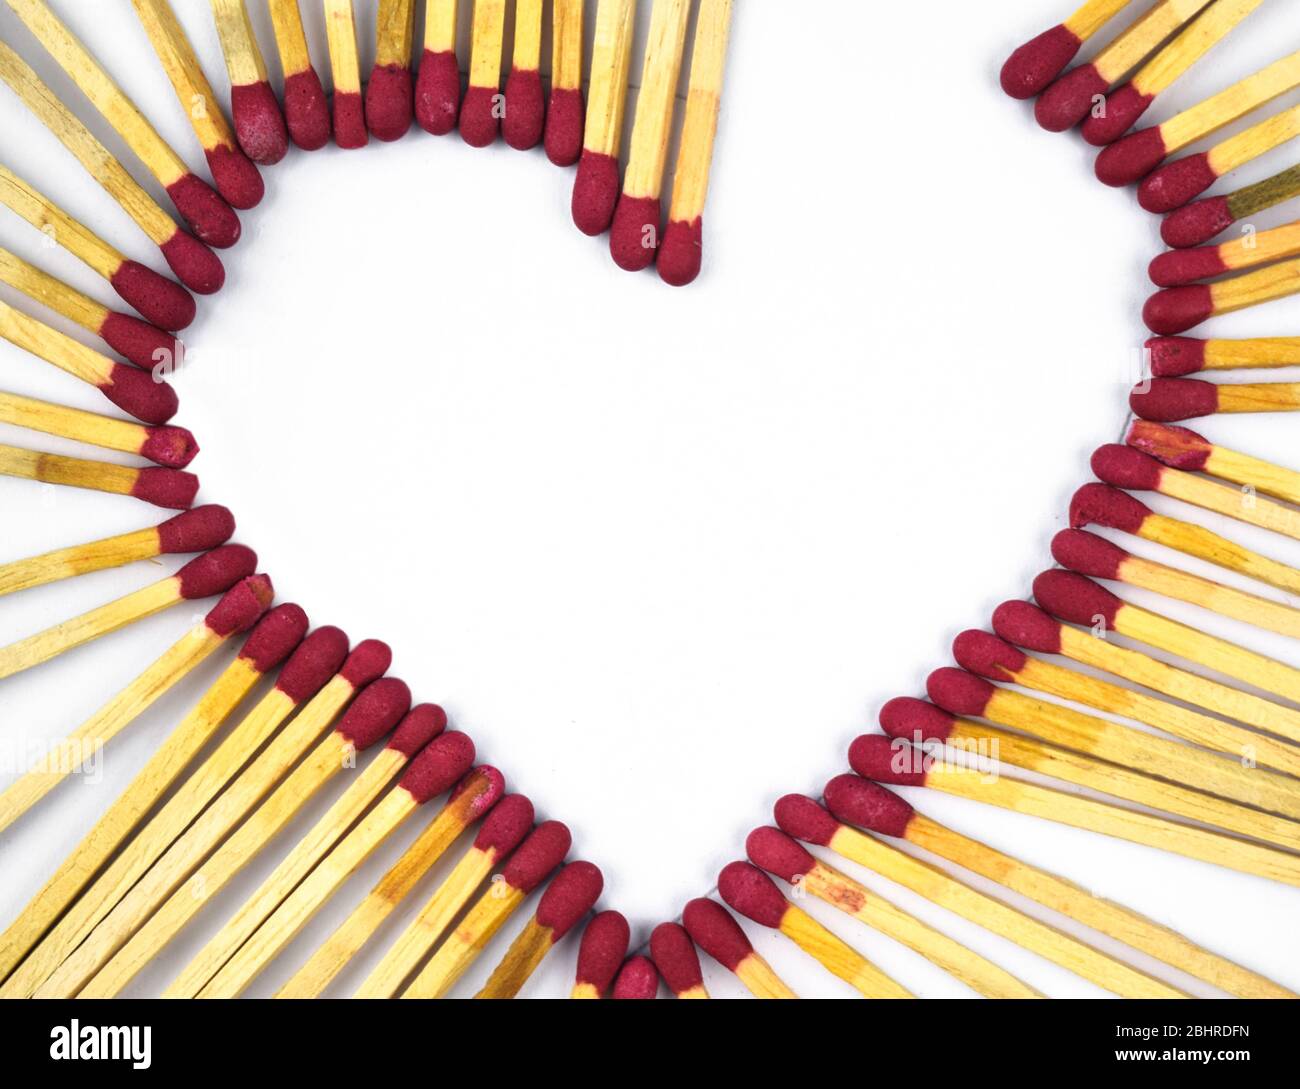 Corazón roto hecho con palos de color rojo quemados frente a un fondo blanco aislado Foto de stock